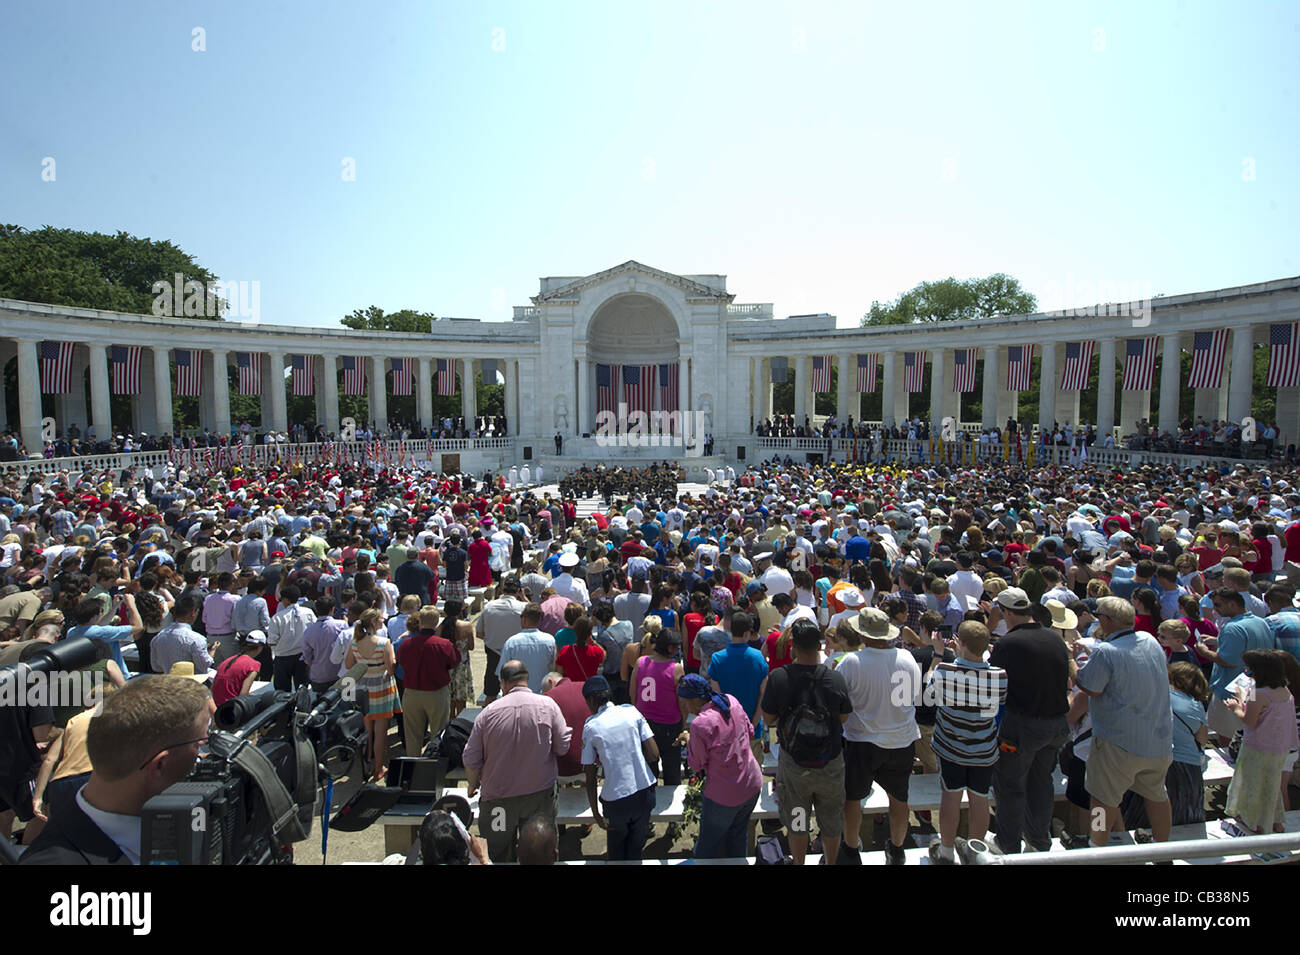 Beobachter im Amphitheater auf dem Arlington National Cemetery stehen für die Nationalhymne während während der Gedenktag Gottesdienste auf dem Arlington National Cemetery 28. Mai 2012 in Arlington, VA Stockfoto